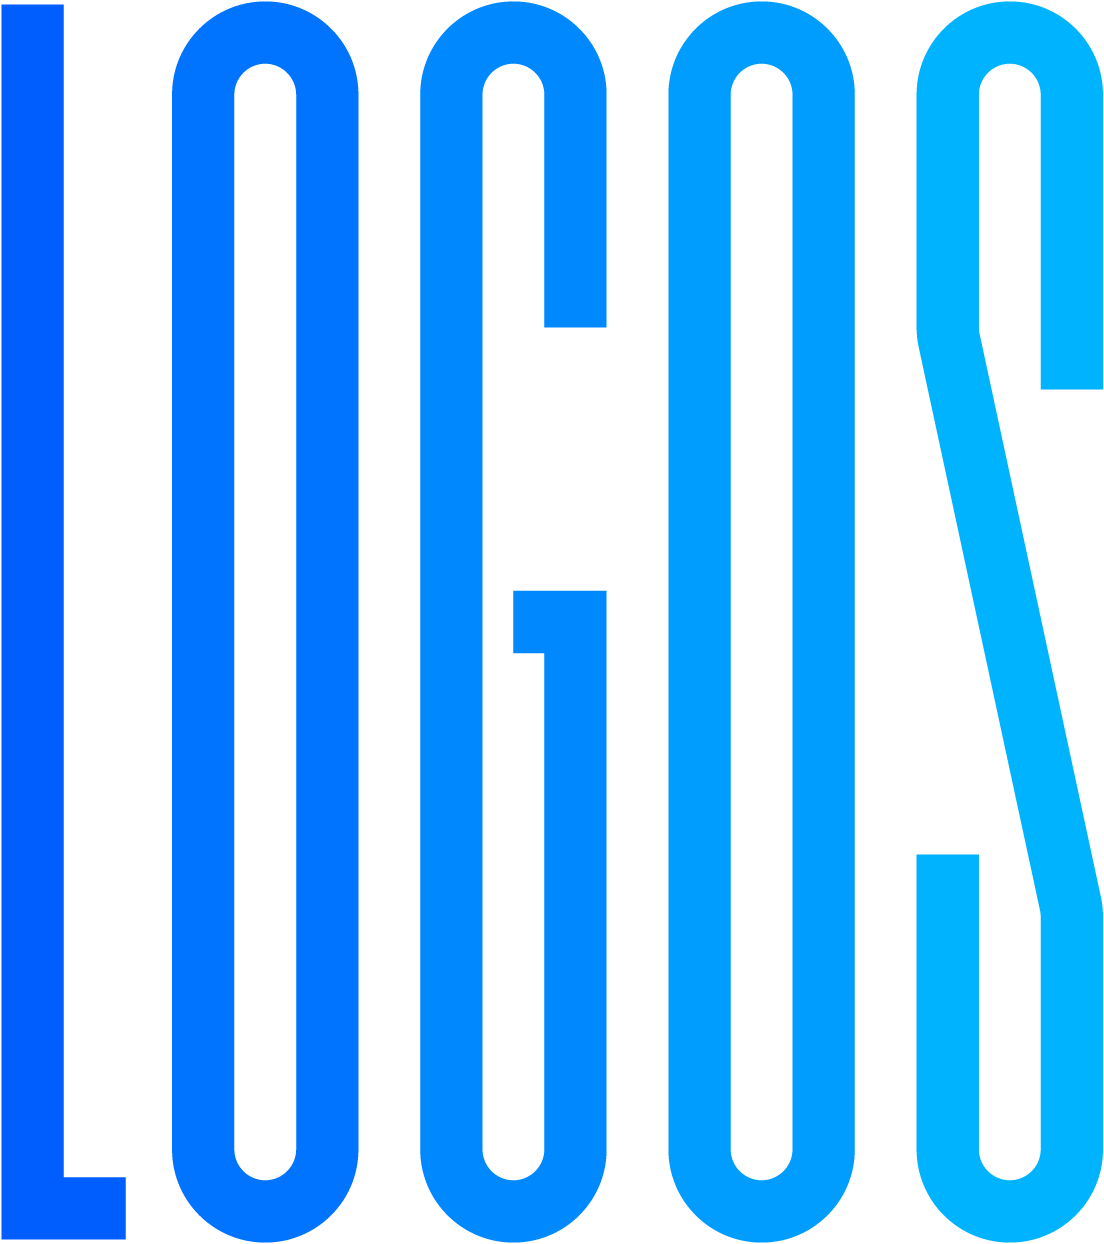 Logos 2010 — 2015